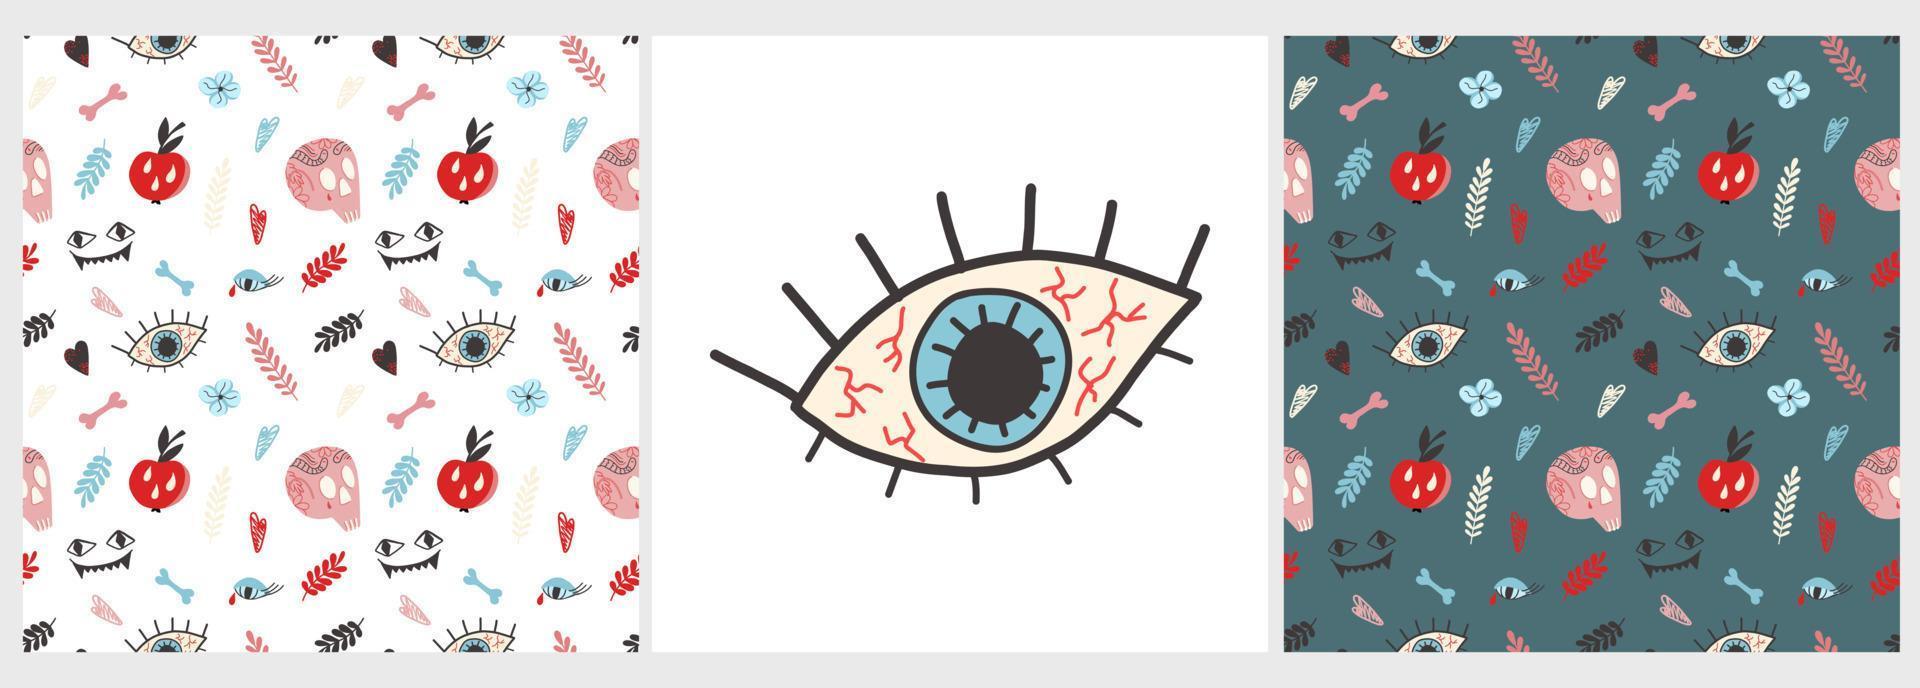 Vektorset von Mustern und Postern mit Totenkopf, Tattoos, Knochen, Apfel, Auge, in einem flachen Stil auf dunklem Hintergrund. illustration für halloween, t-shirts, geschenkverpackung, postkarten, banner vektor